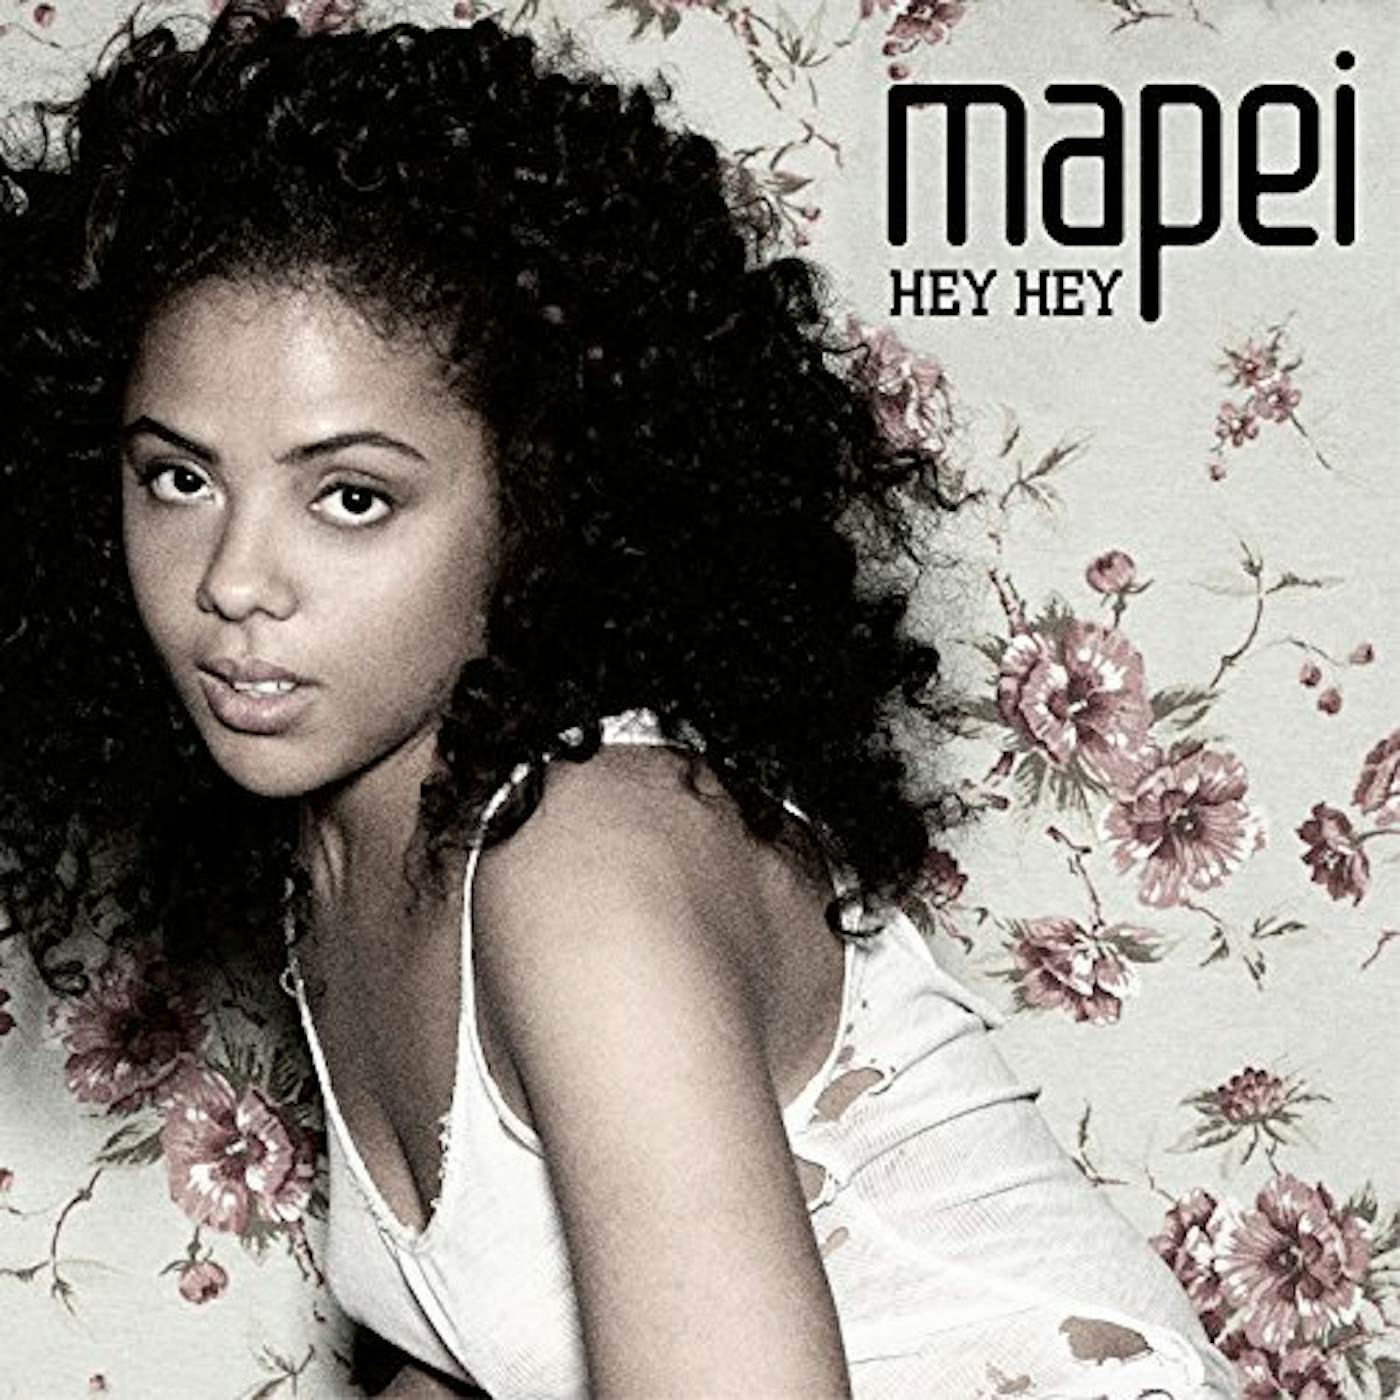 Mapei Hey Hey Vinyl Record